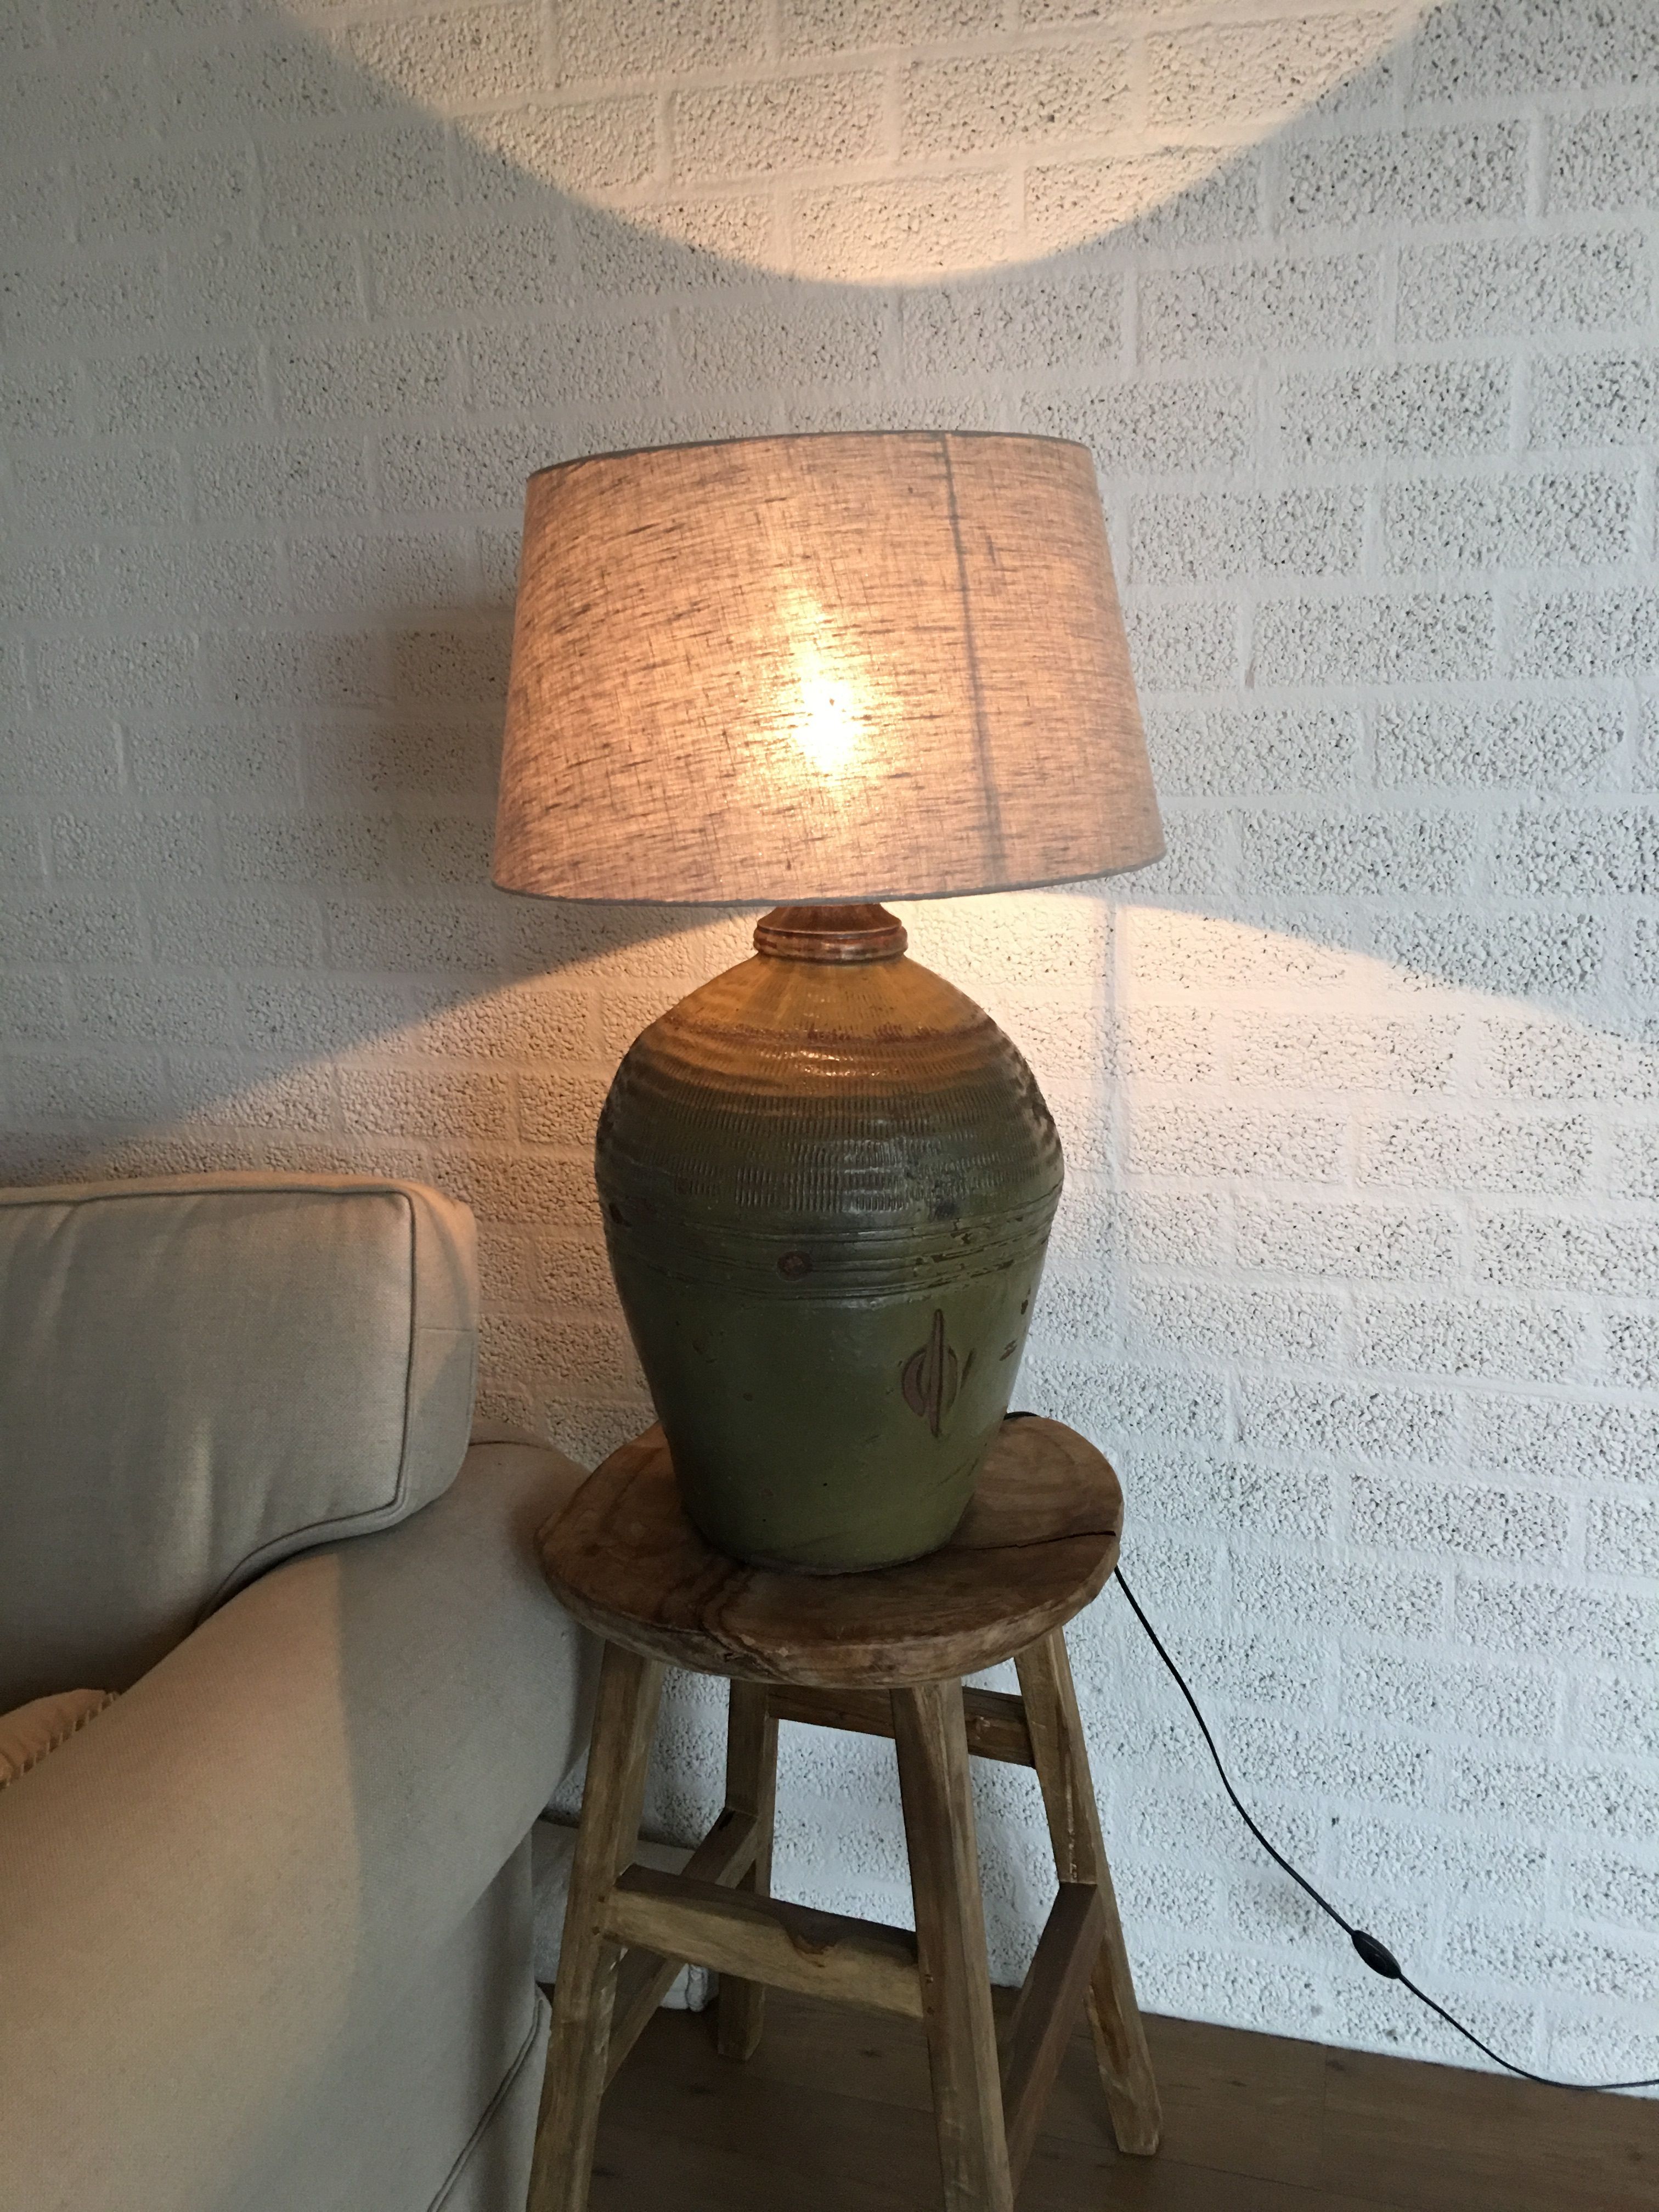 Einzigartig schöne Lampe auf original altem Azeatischen Wasserkrug!